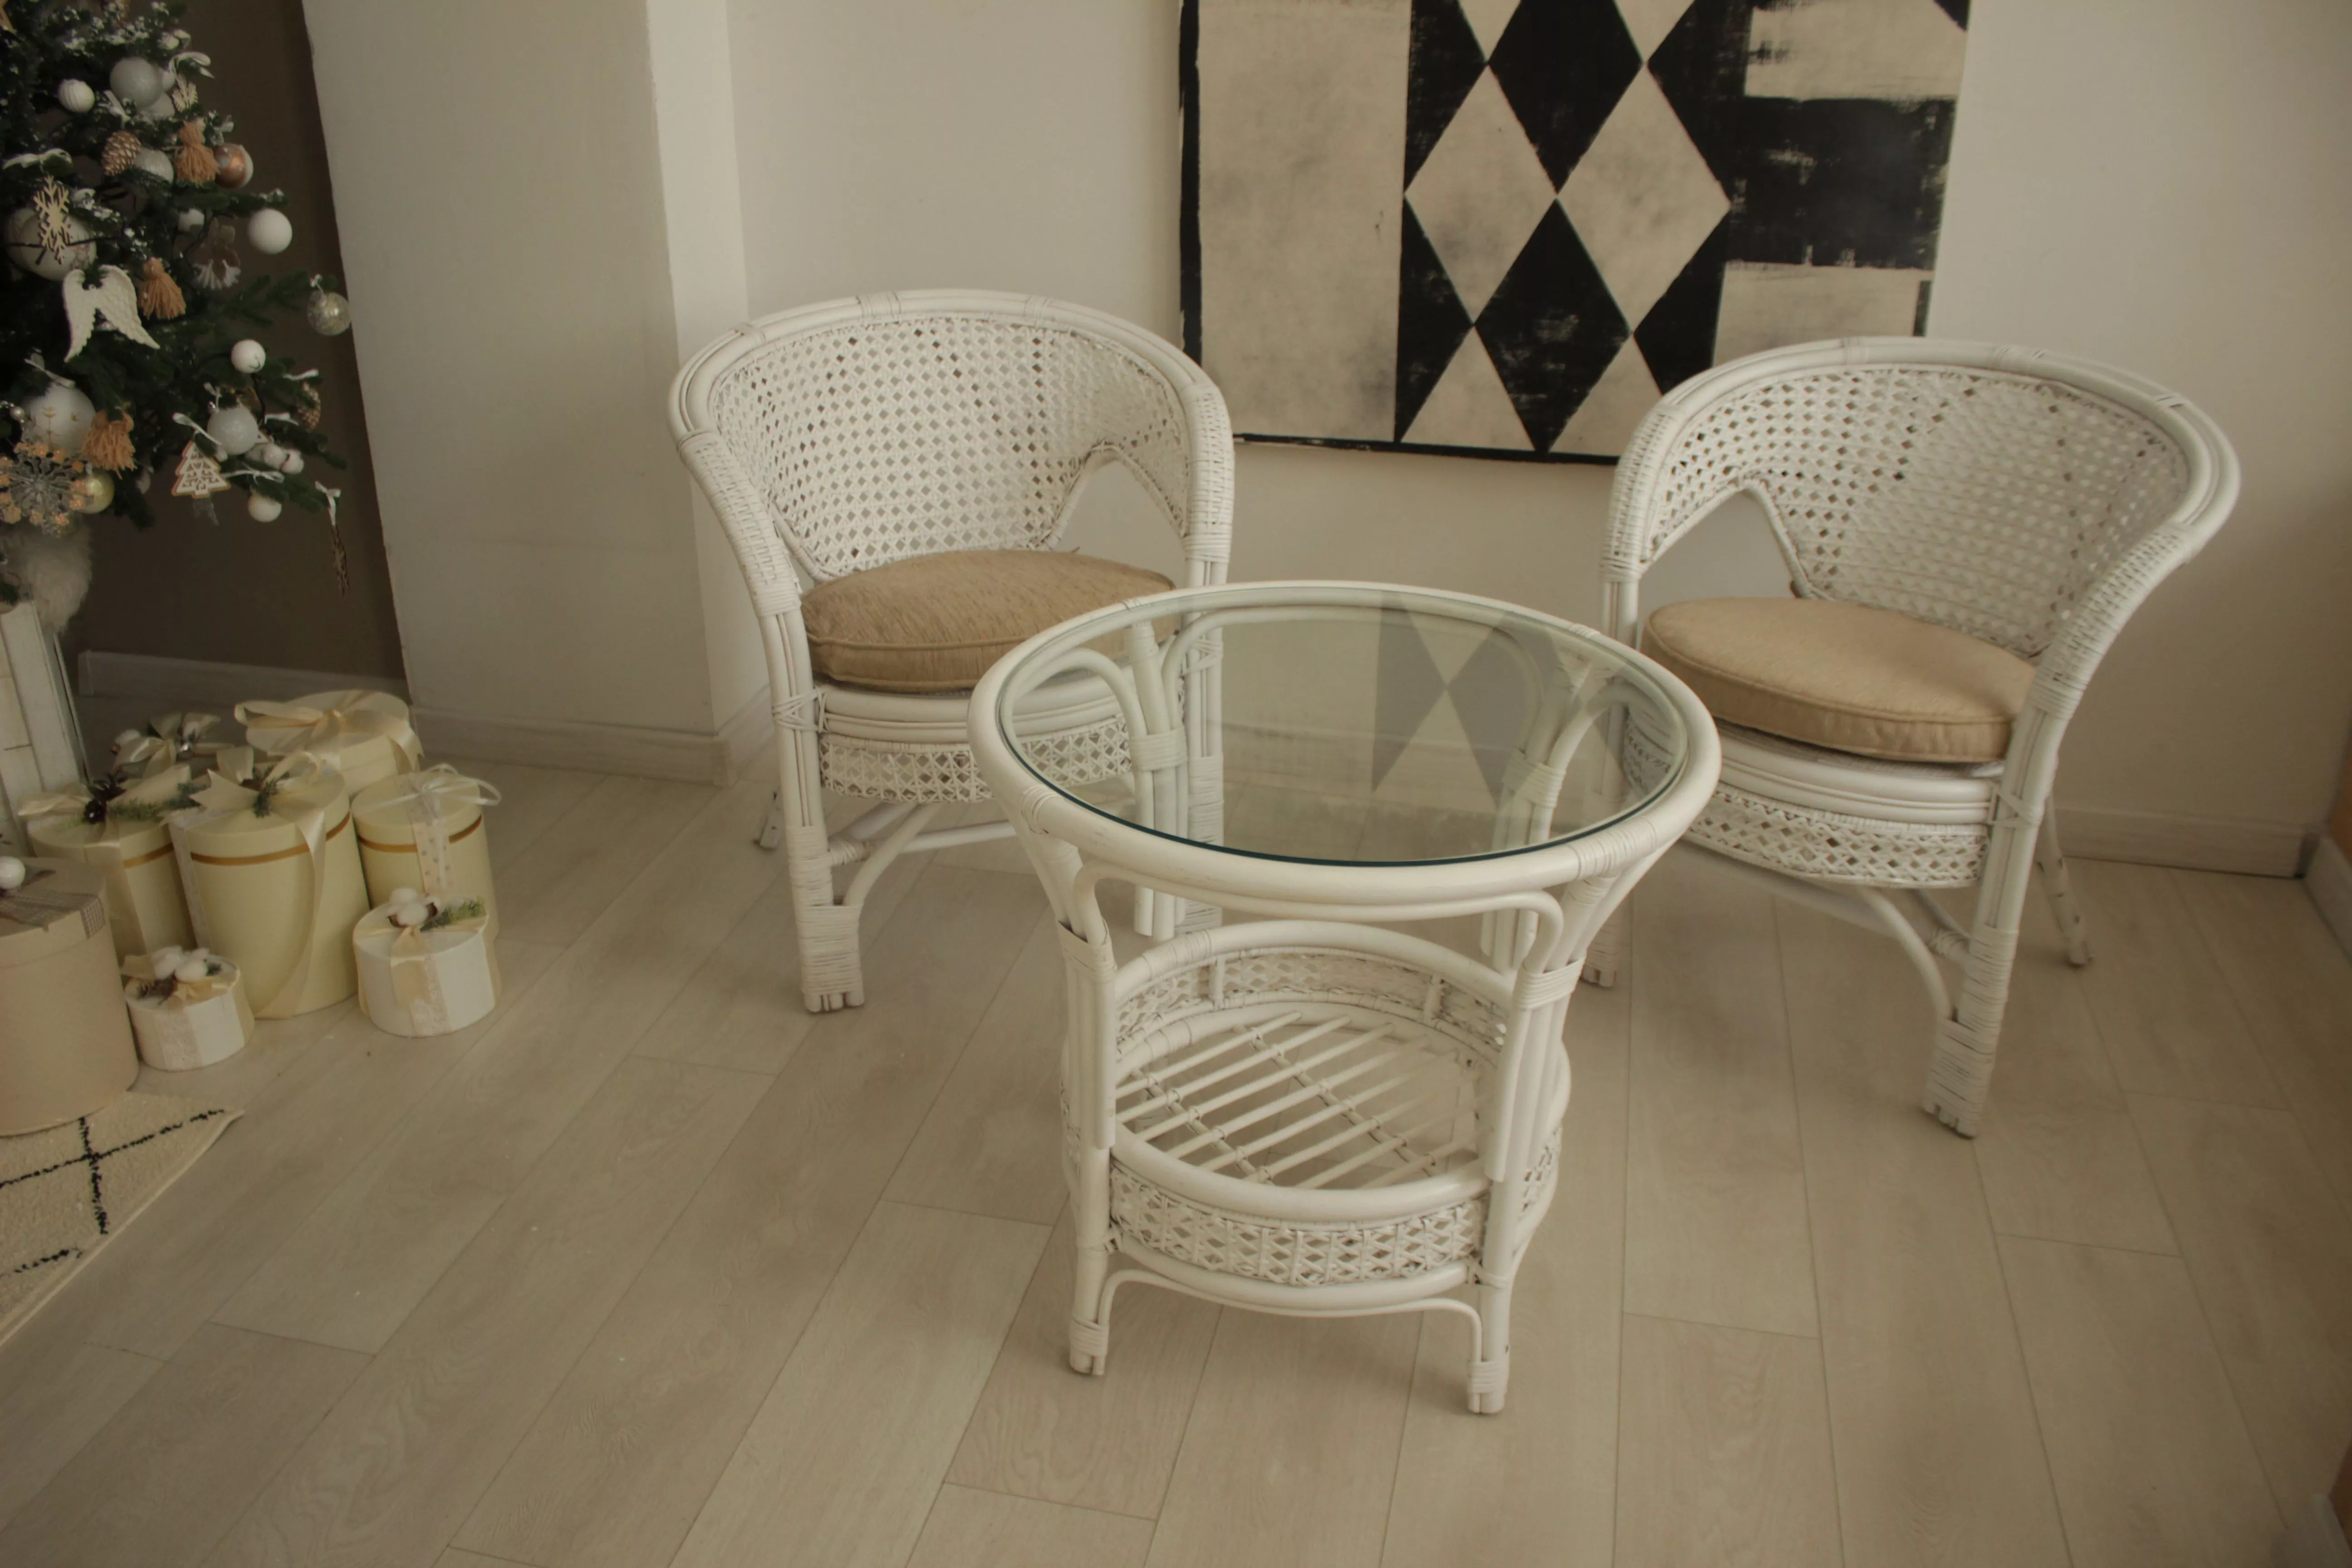 Комплект мебели из ротанга Пеланги 02 15 с 2х местным диваном и овальным столом белый матовый